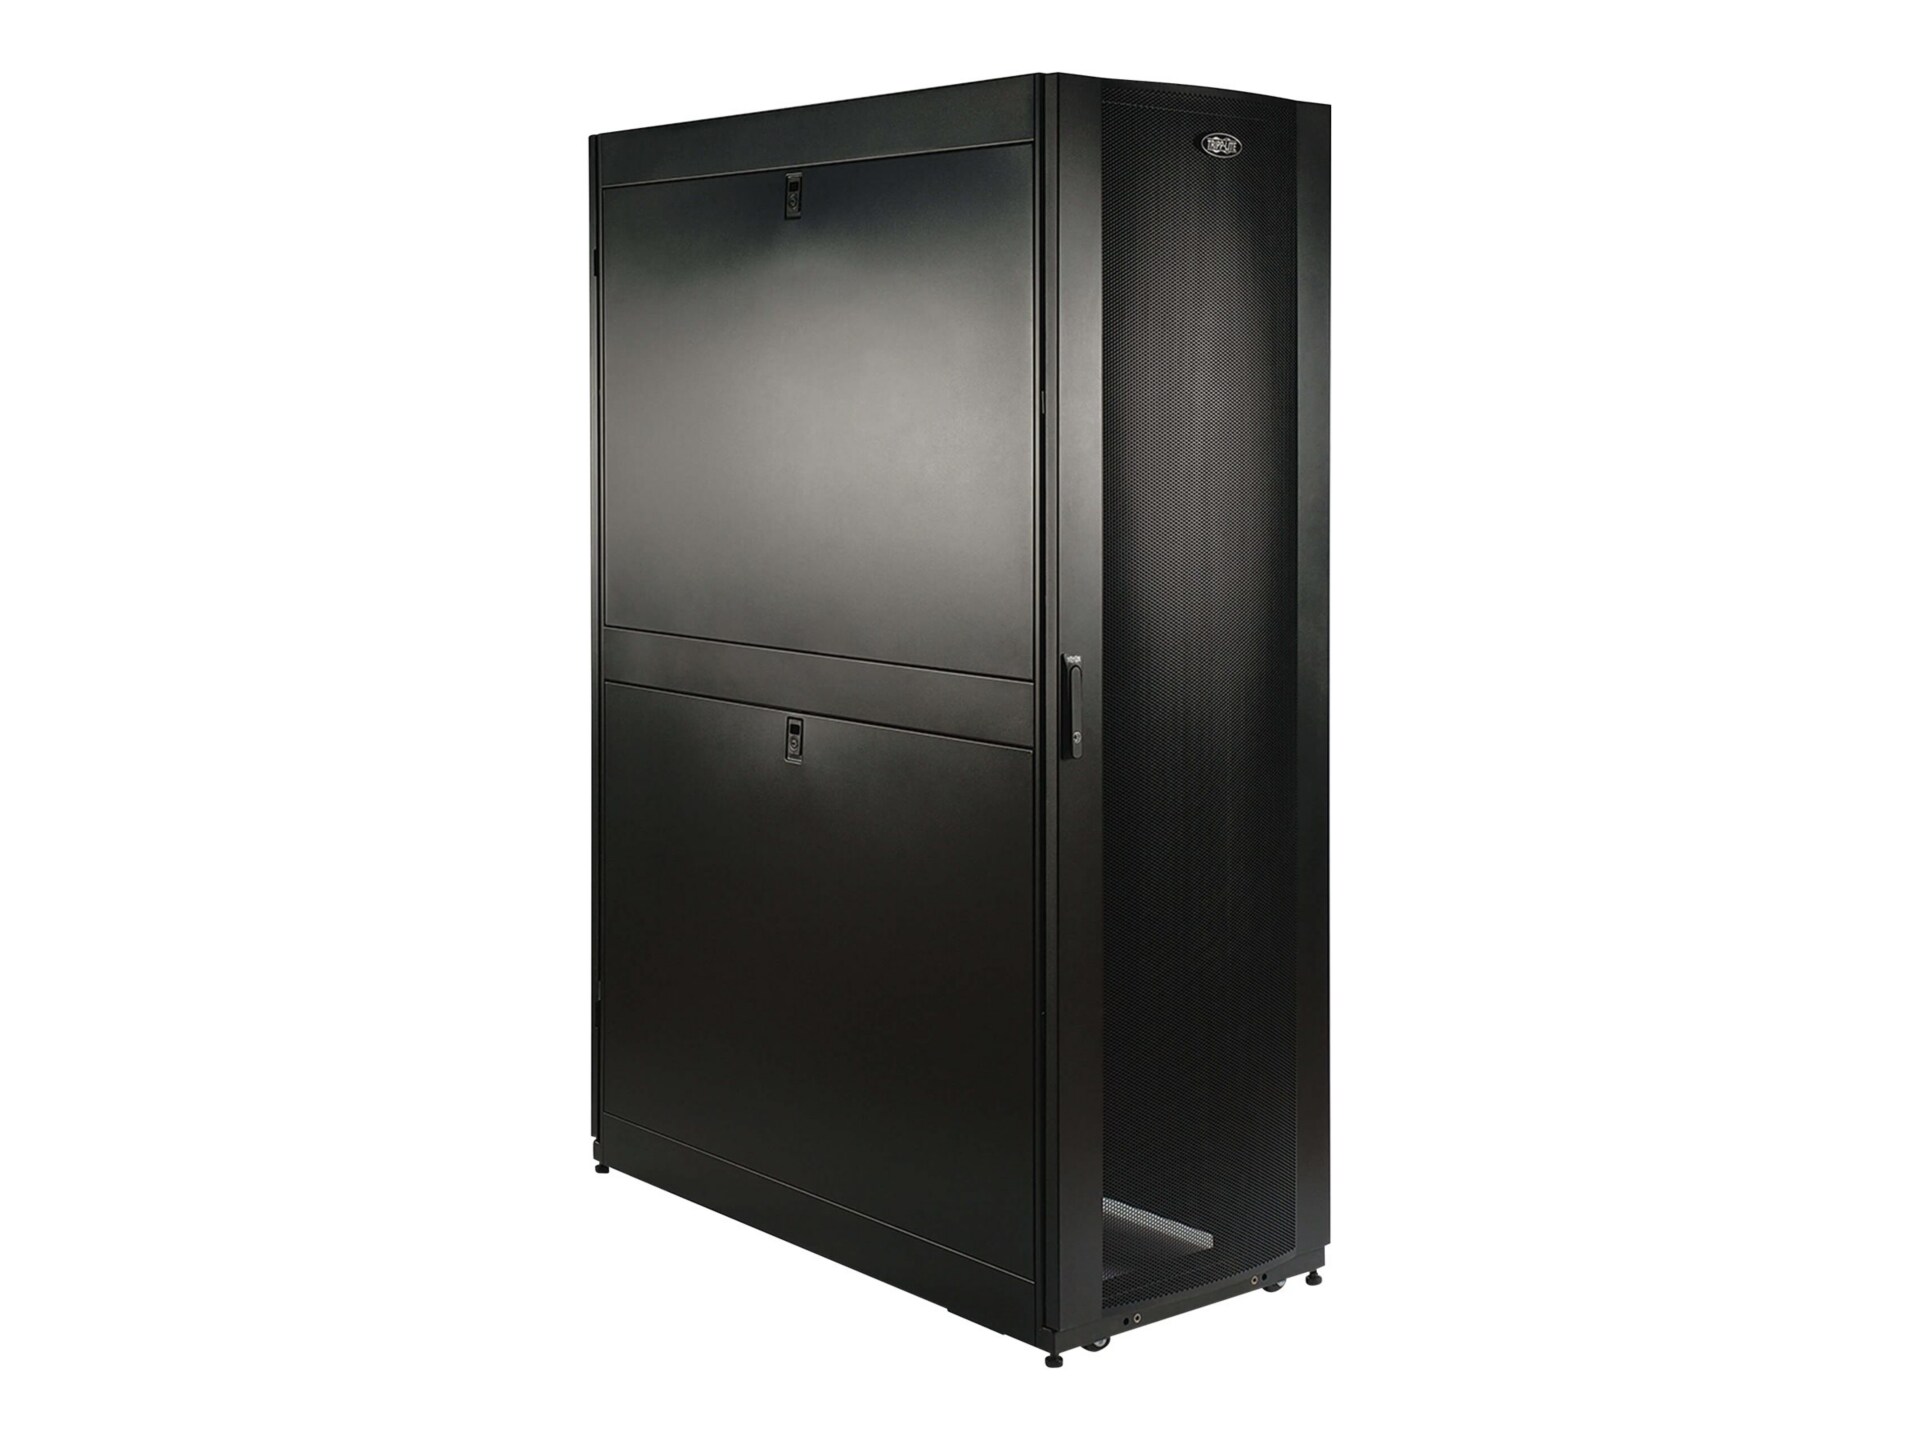 Tripp Lite 45U Extra-Deep Server Rack - 48 in. (1219 mm) Depth, Doors & Side Panels Included - rack - 45U